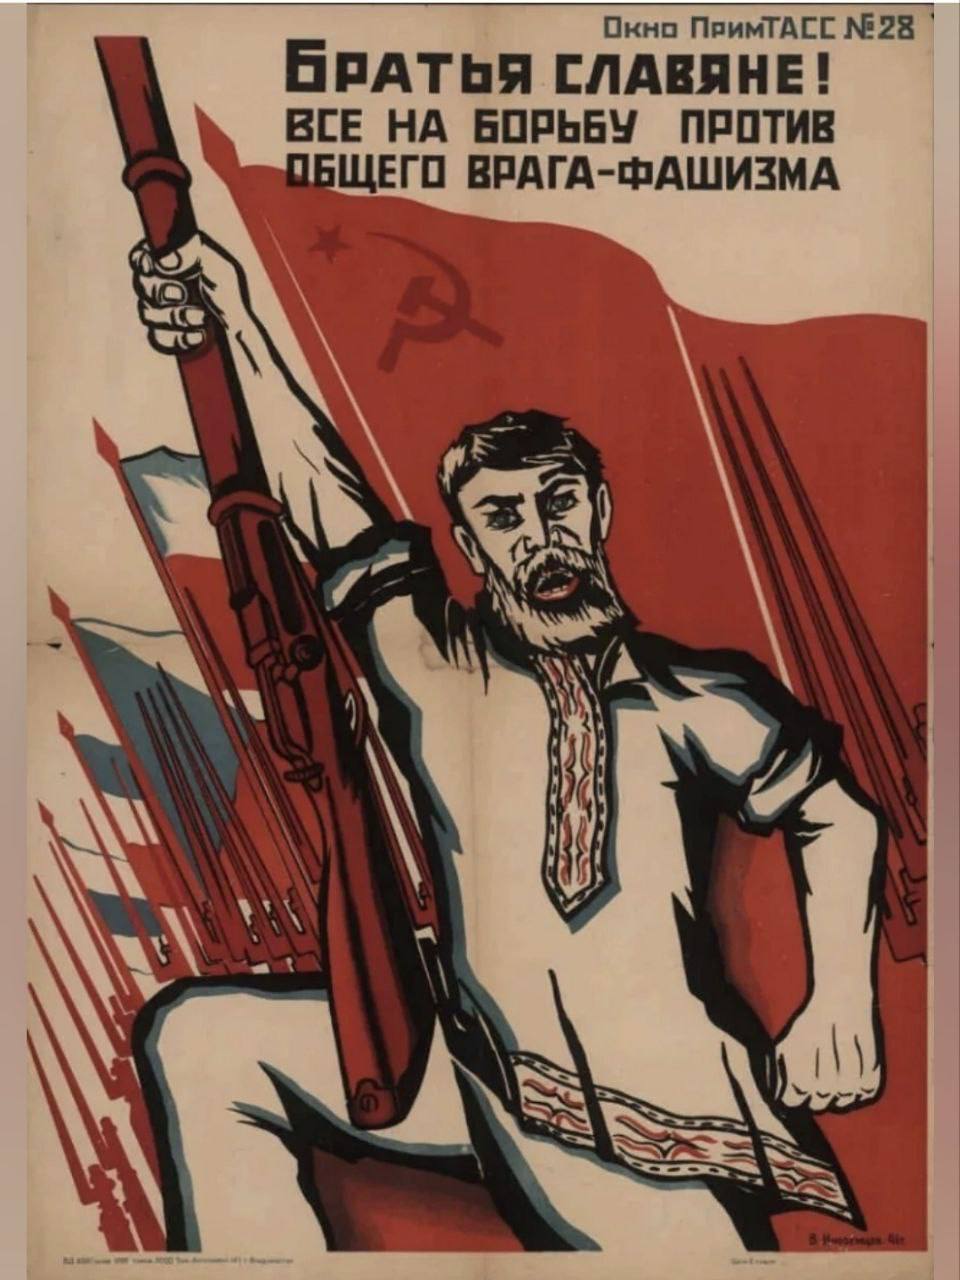 Против общего врага. Славяне против фашизма. Советские плакаты против нацизма. Плоакат бо ьба с фашизмом.